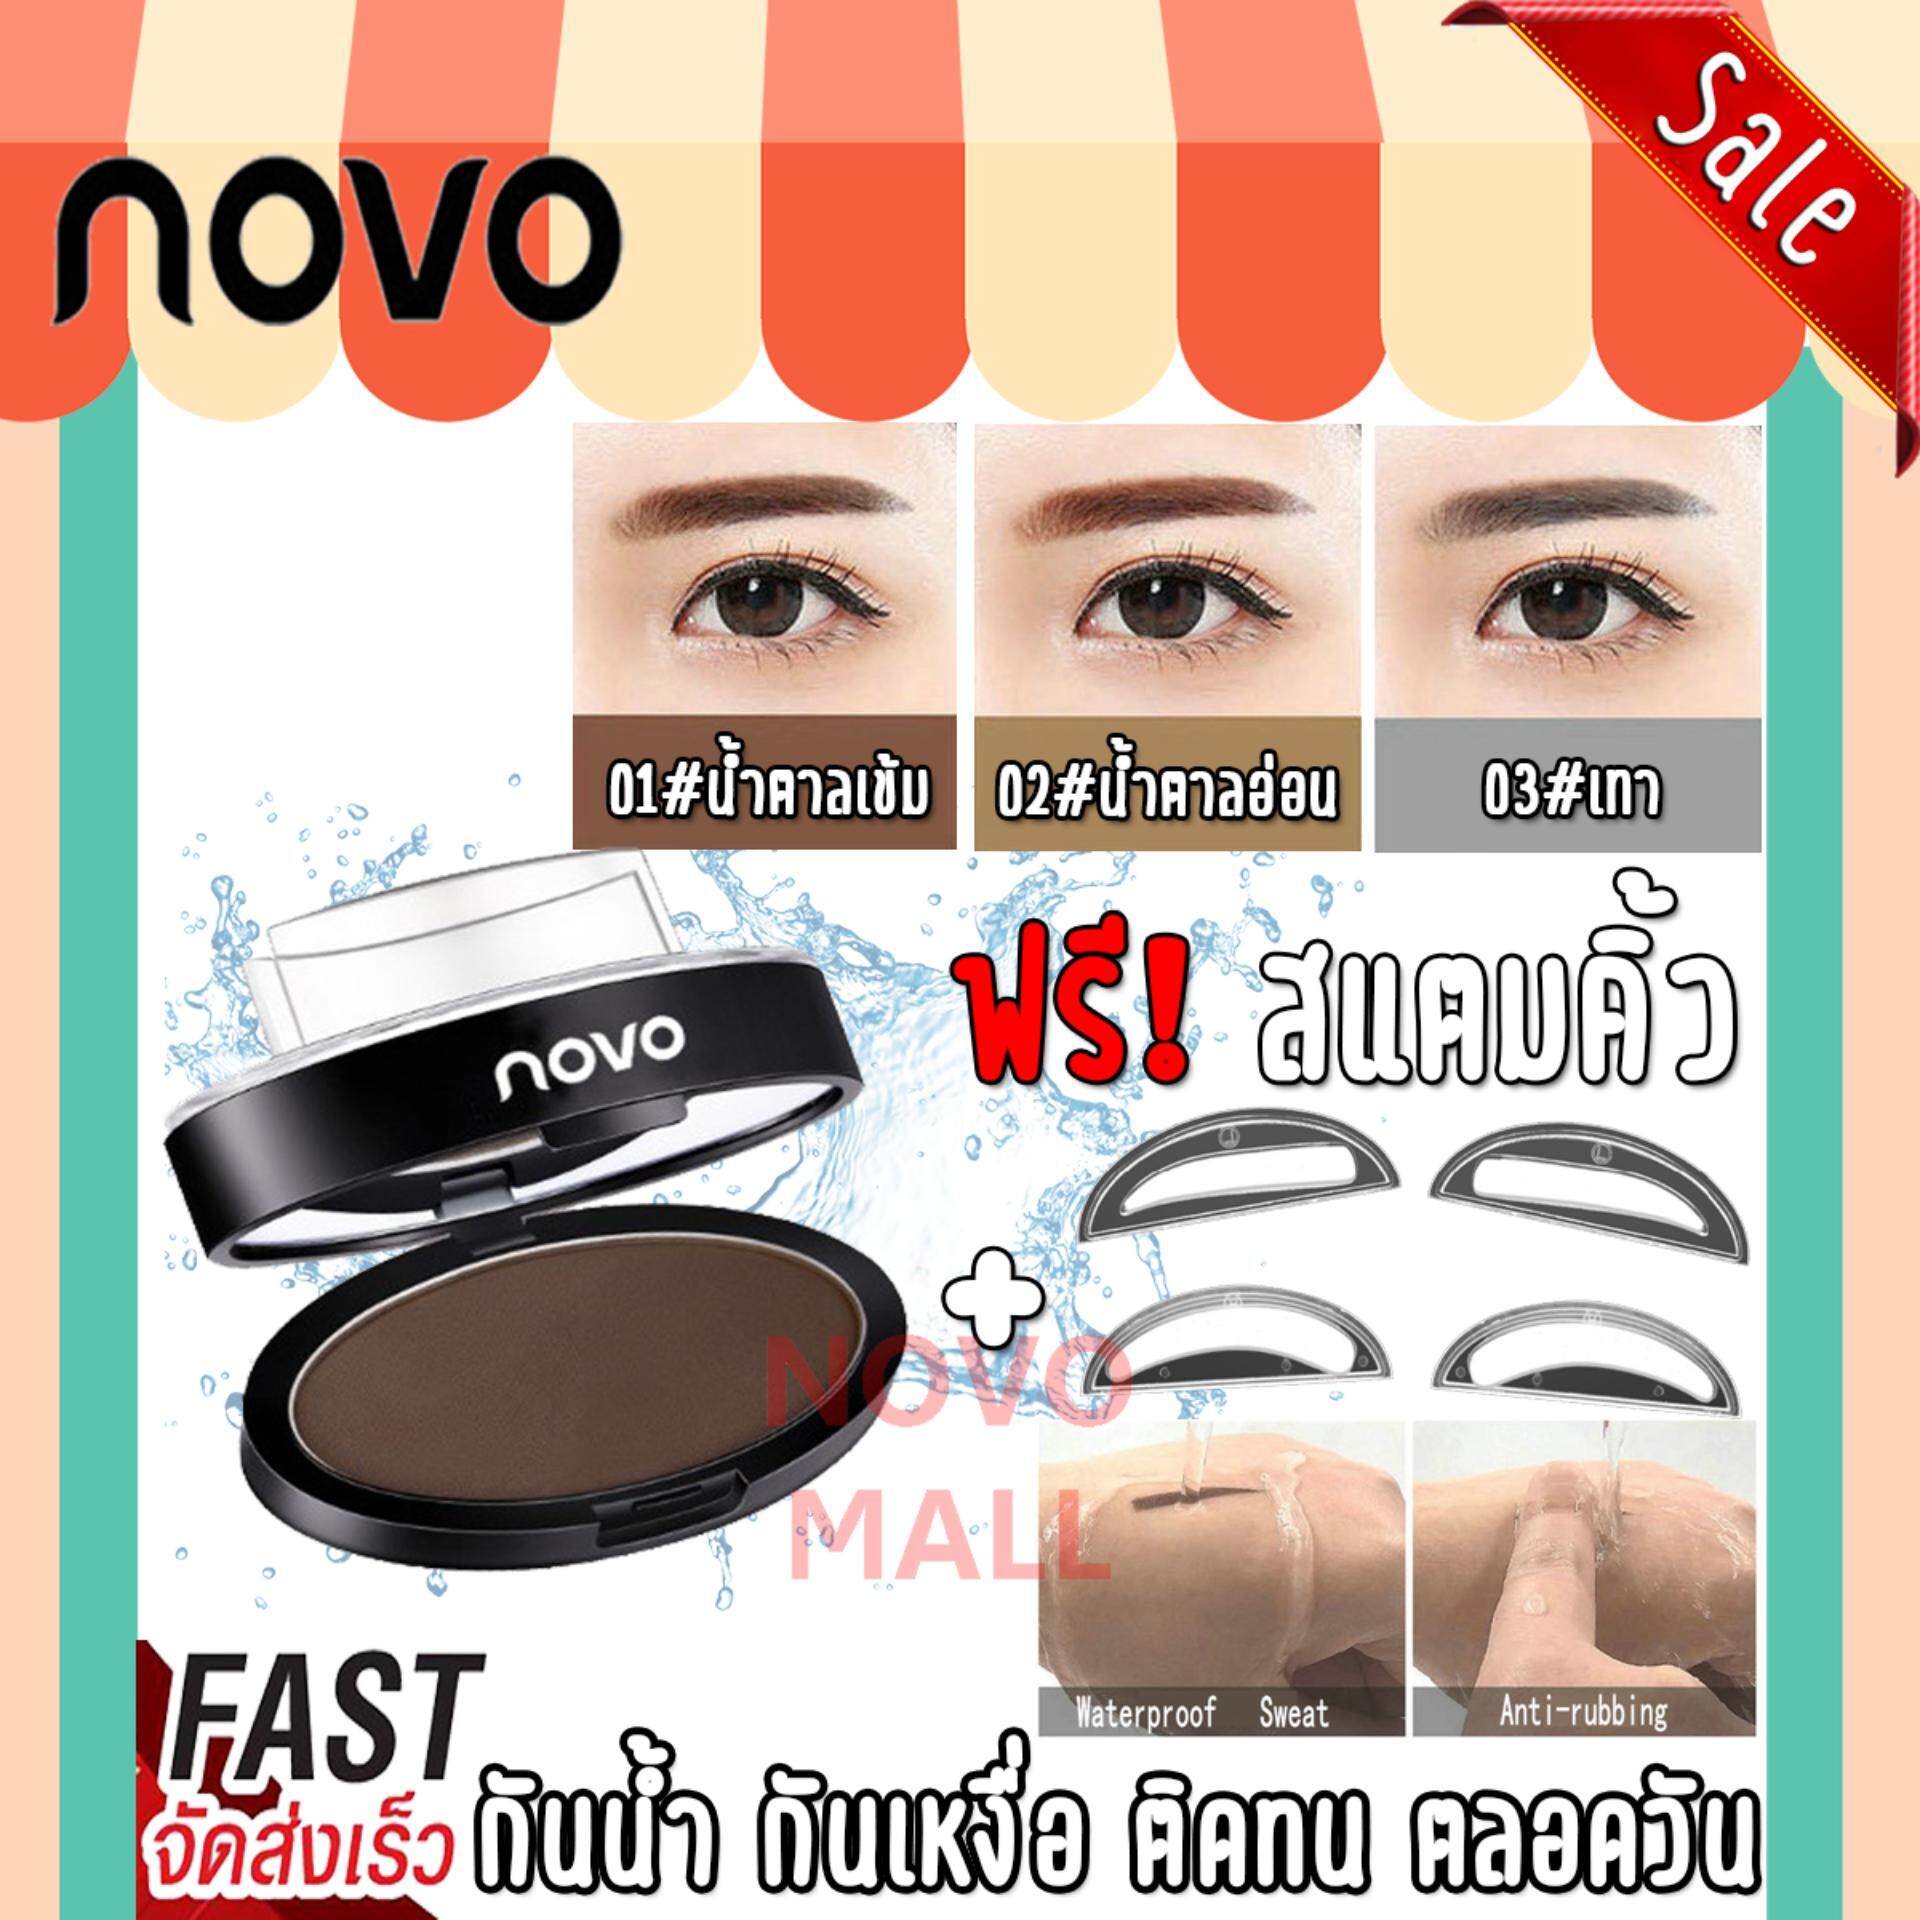 (ของแท้/พร้อมส่งกดเลย) สแตมป์ปั๊มคิ้ว NOVO Quick Makeup Eyebrow ฟรี ที่บล็อคคิ้วฟองน้ำ 2 ชิ้นในกล่อง ที่เขียนคิ้ว ปั้มคิ้ว *1ชิ้น รหัสสินค้า 91050